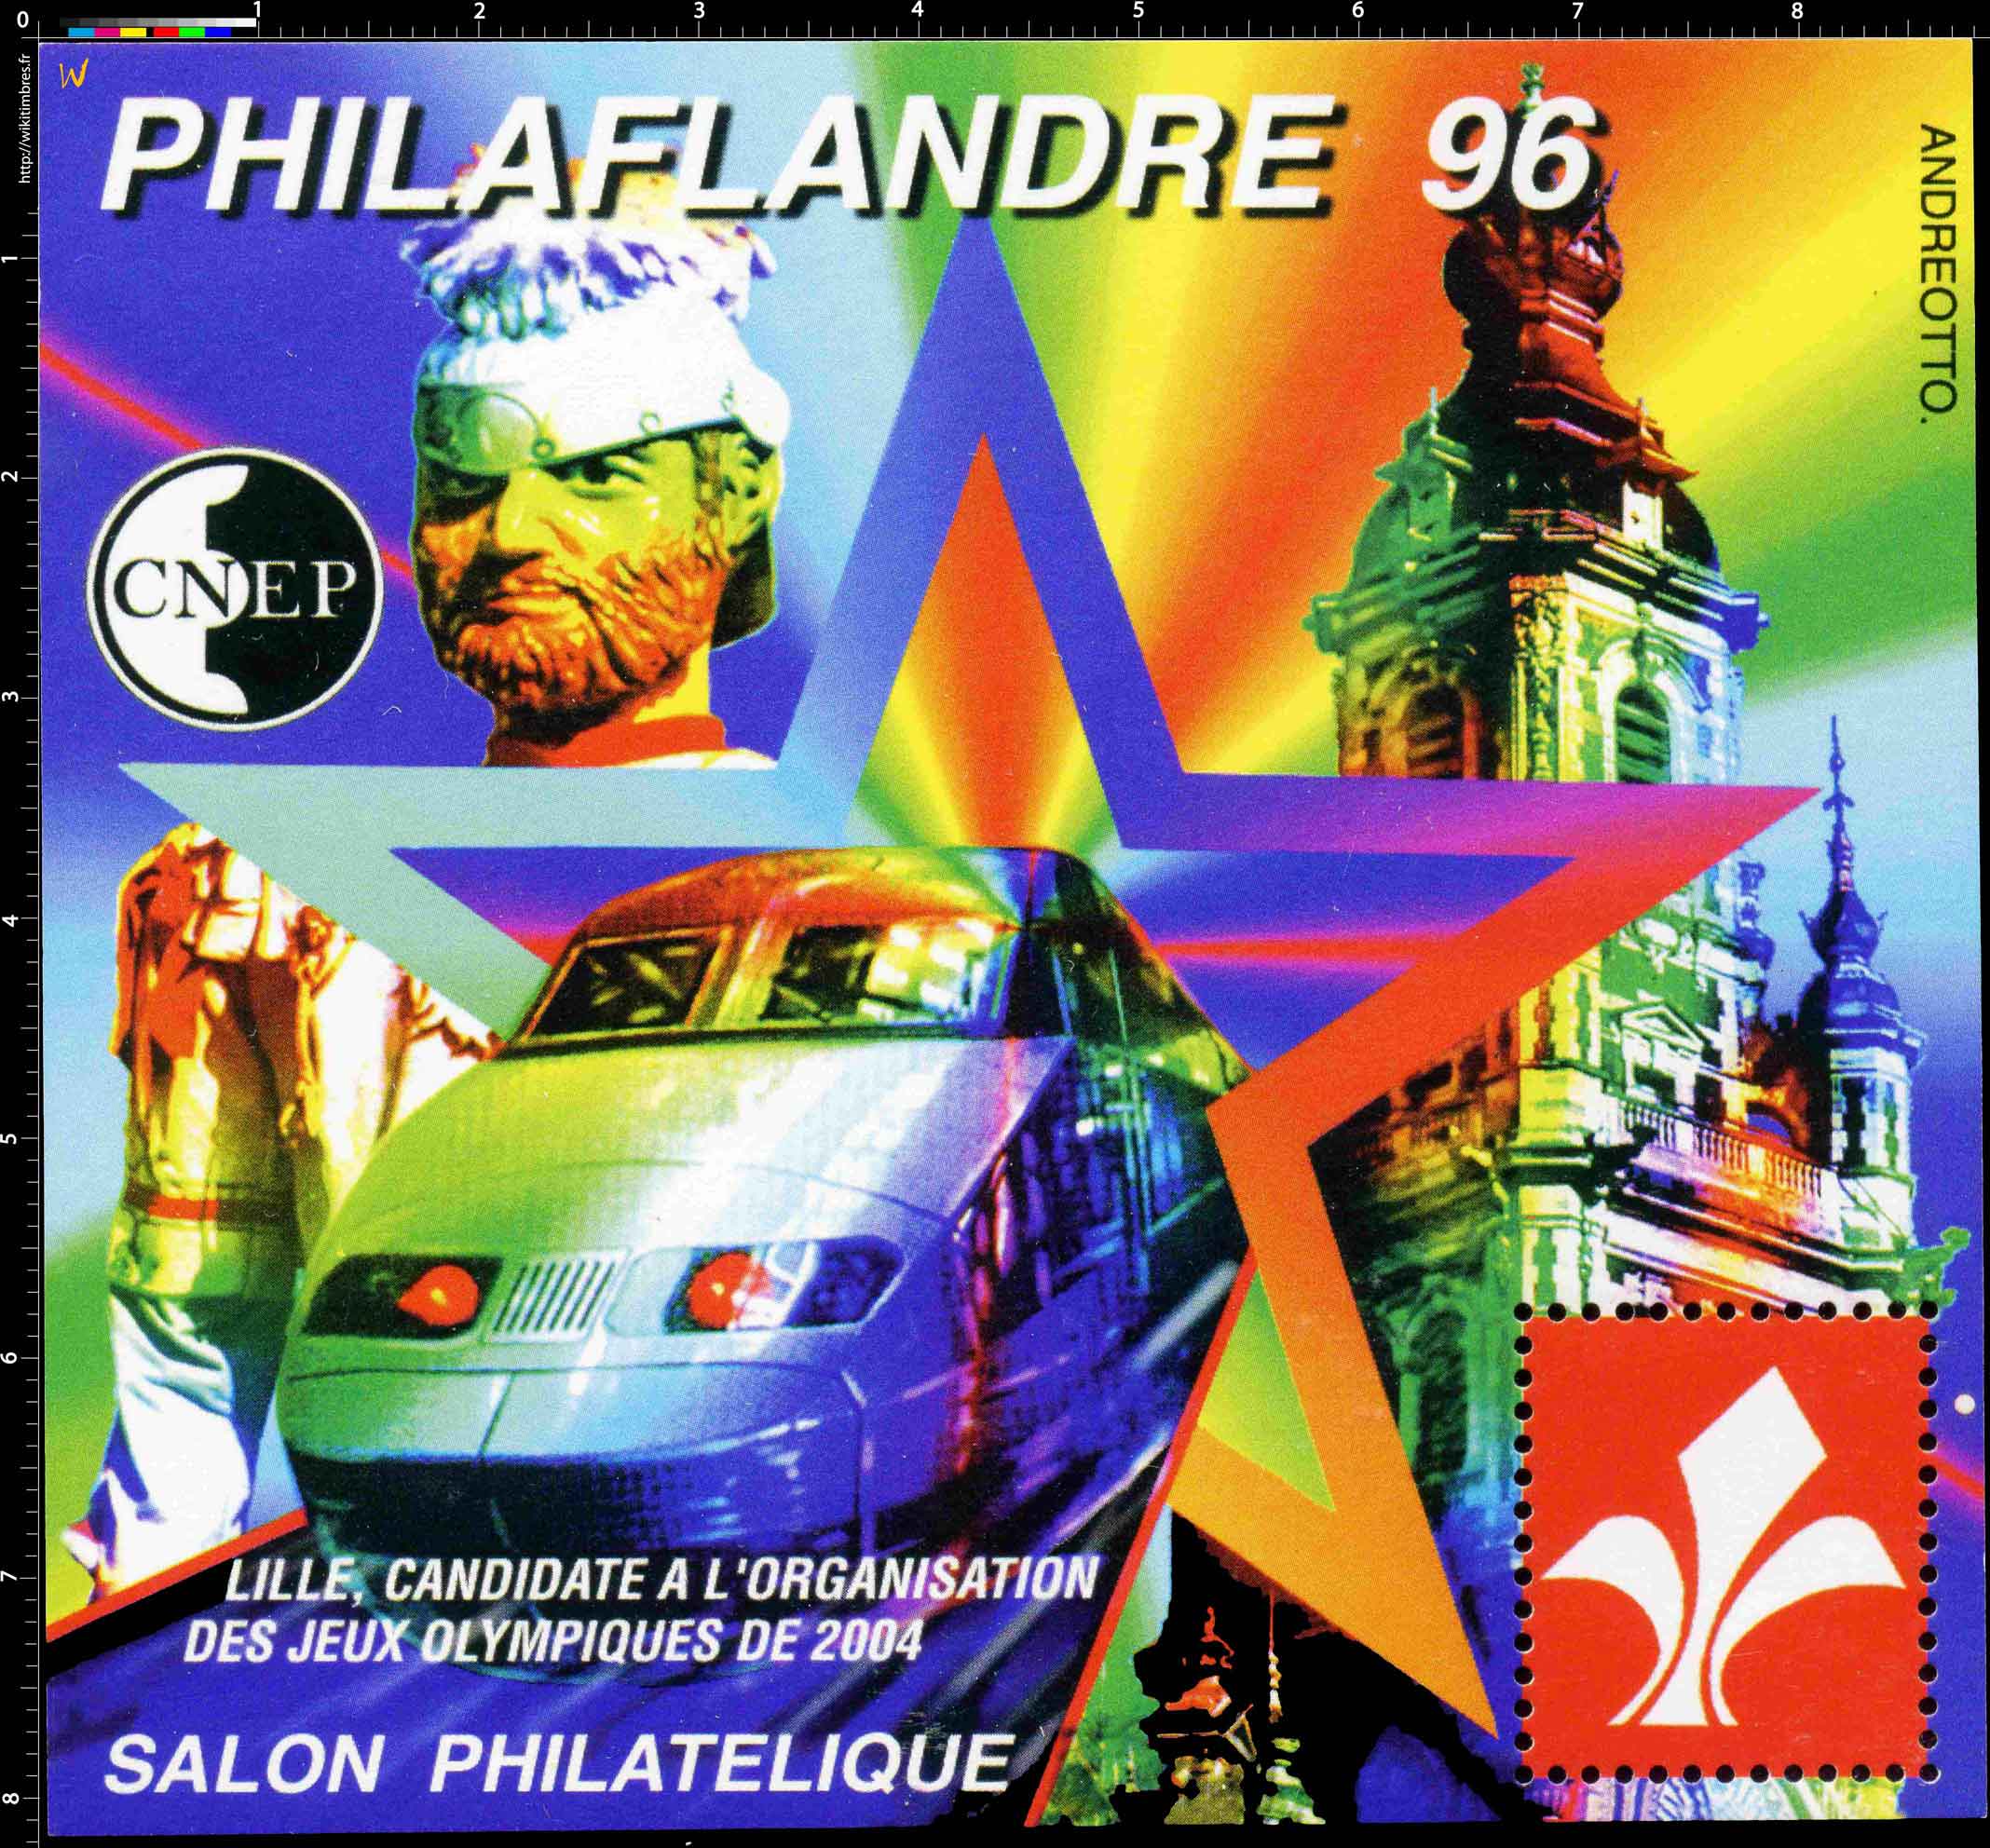 96 Philaflandre Lille candidate à l'organisation des jeux olympiques de 2004 Salon philatélique CNEP